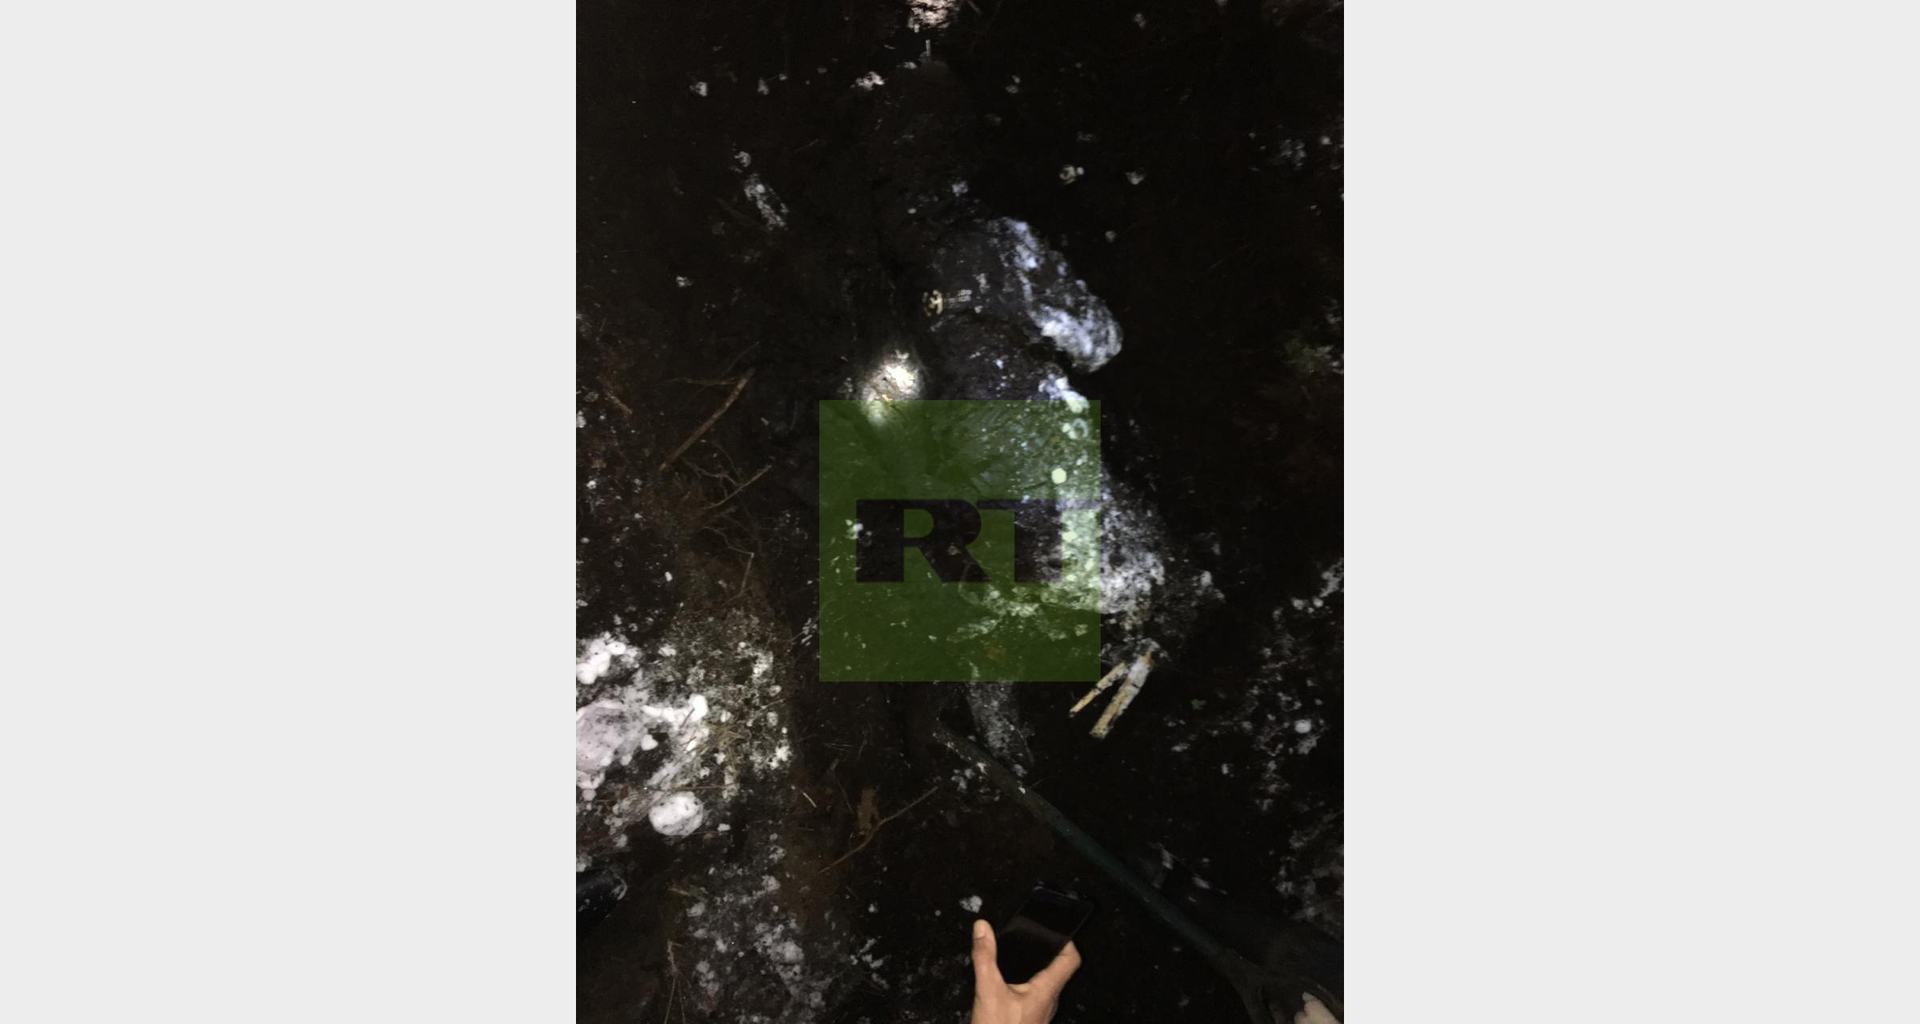 Появились фото с места обнаружения останков предположительно пропавшей Левченко